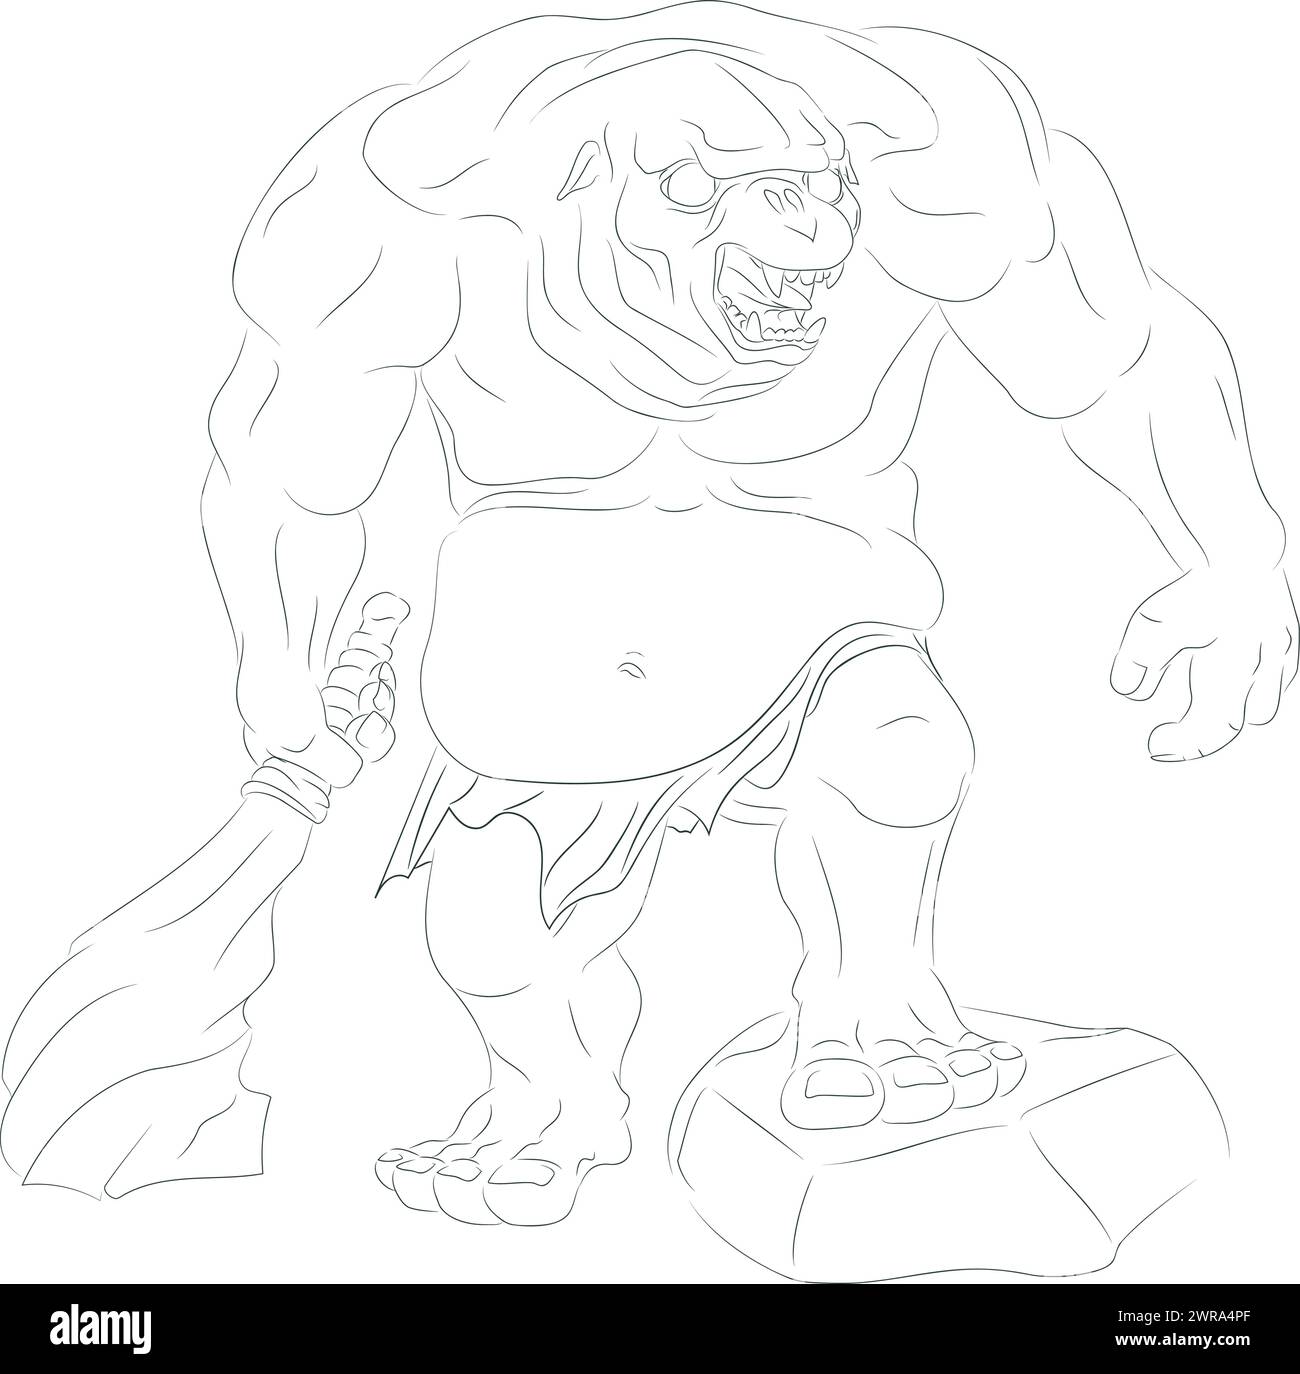 Arte della linea del troll in grotta con un bastoncino spesso in pietra. Illustrazione vettoriale di un troll grotta che tiene un enorme mazzo scolpito nella pietra nella mano destra Illustrazione Vettoriale